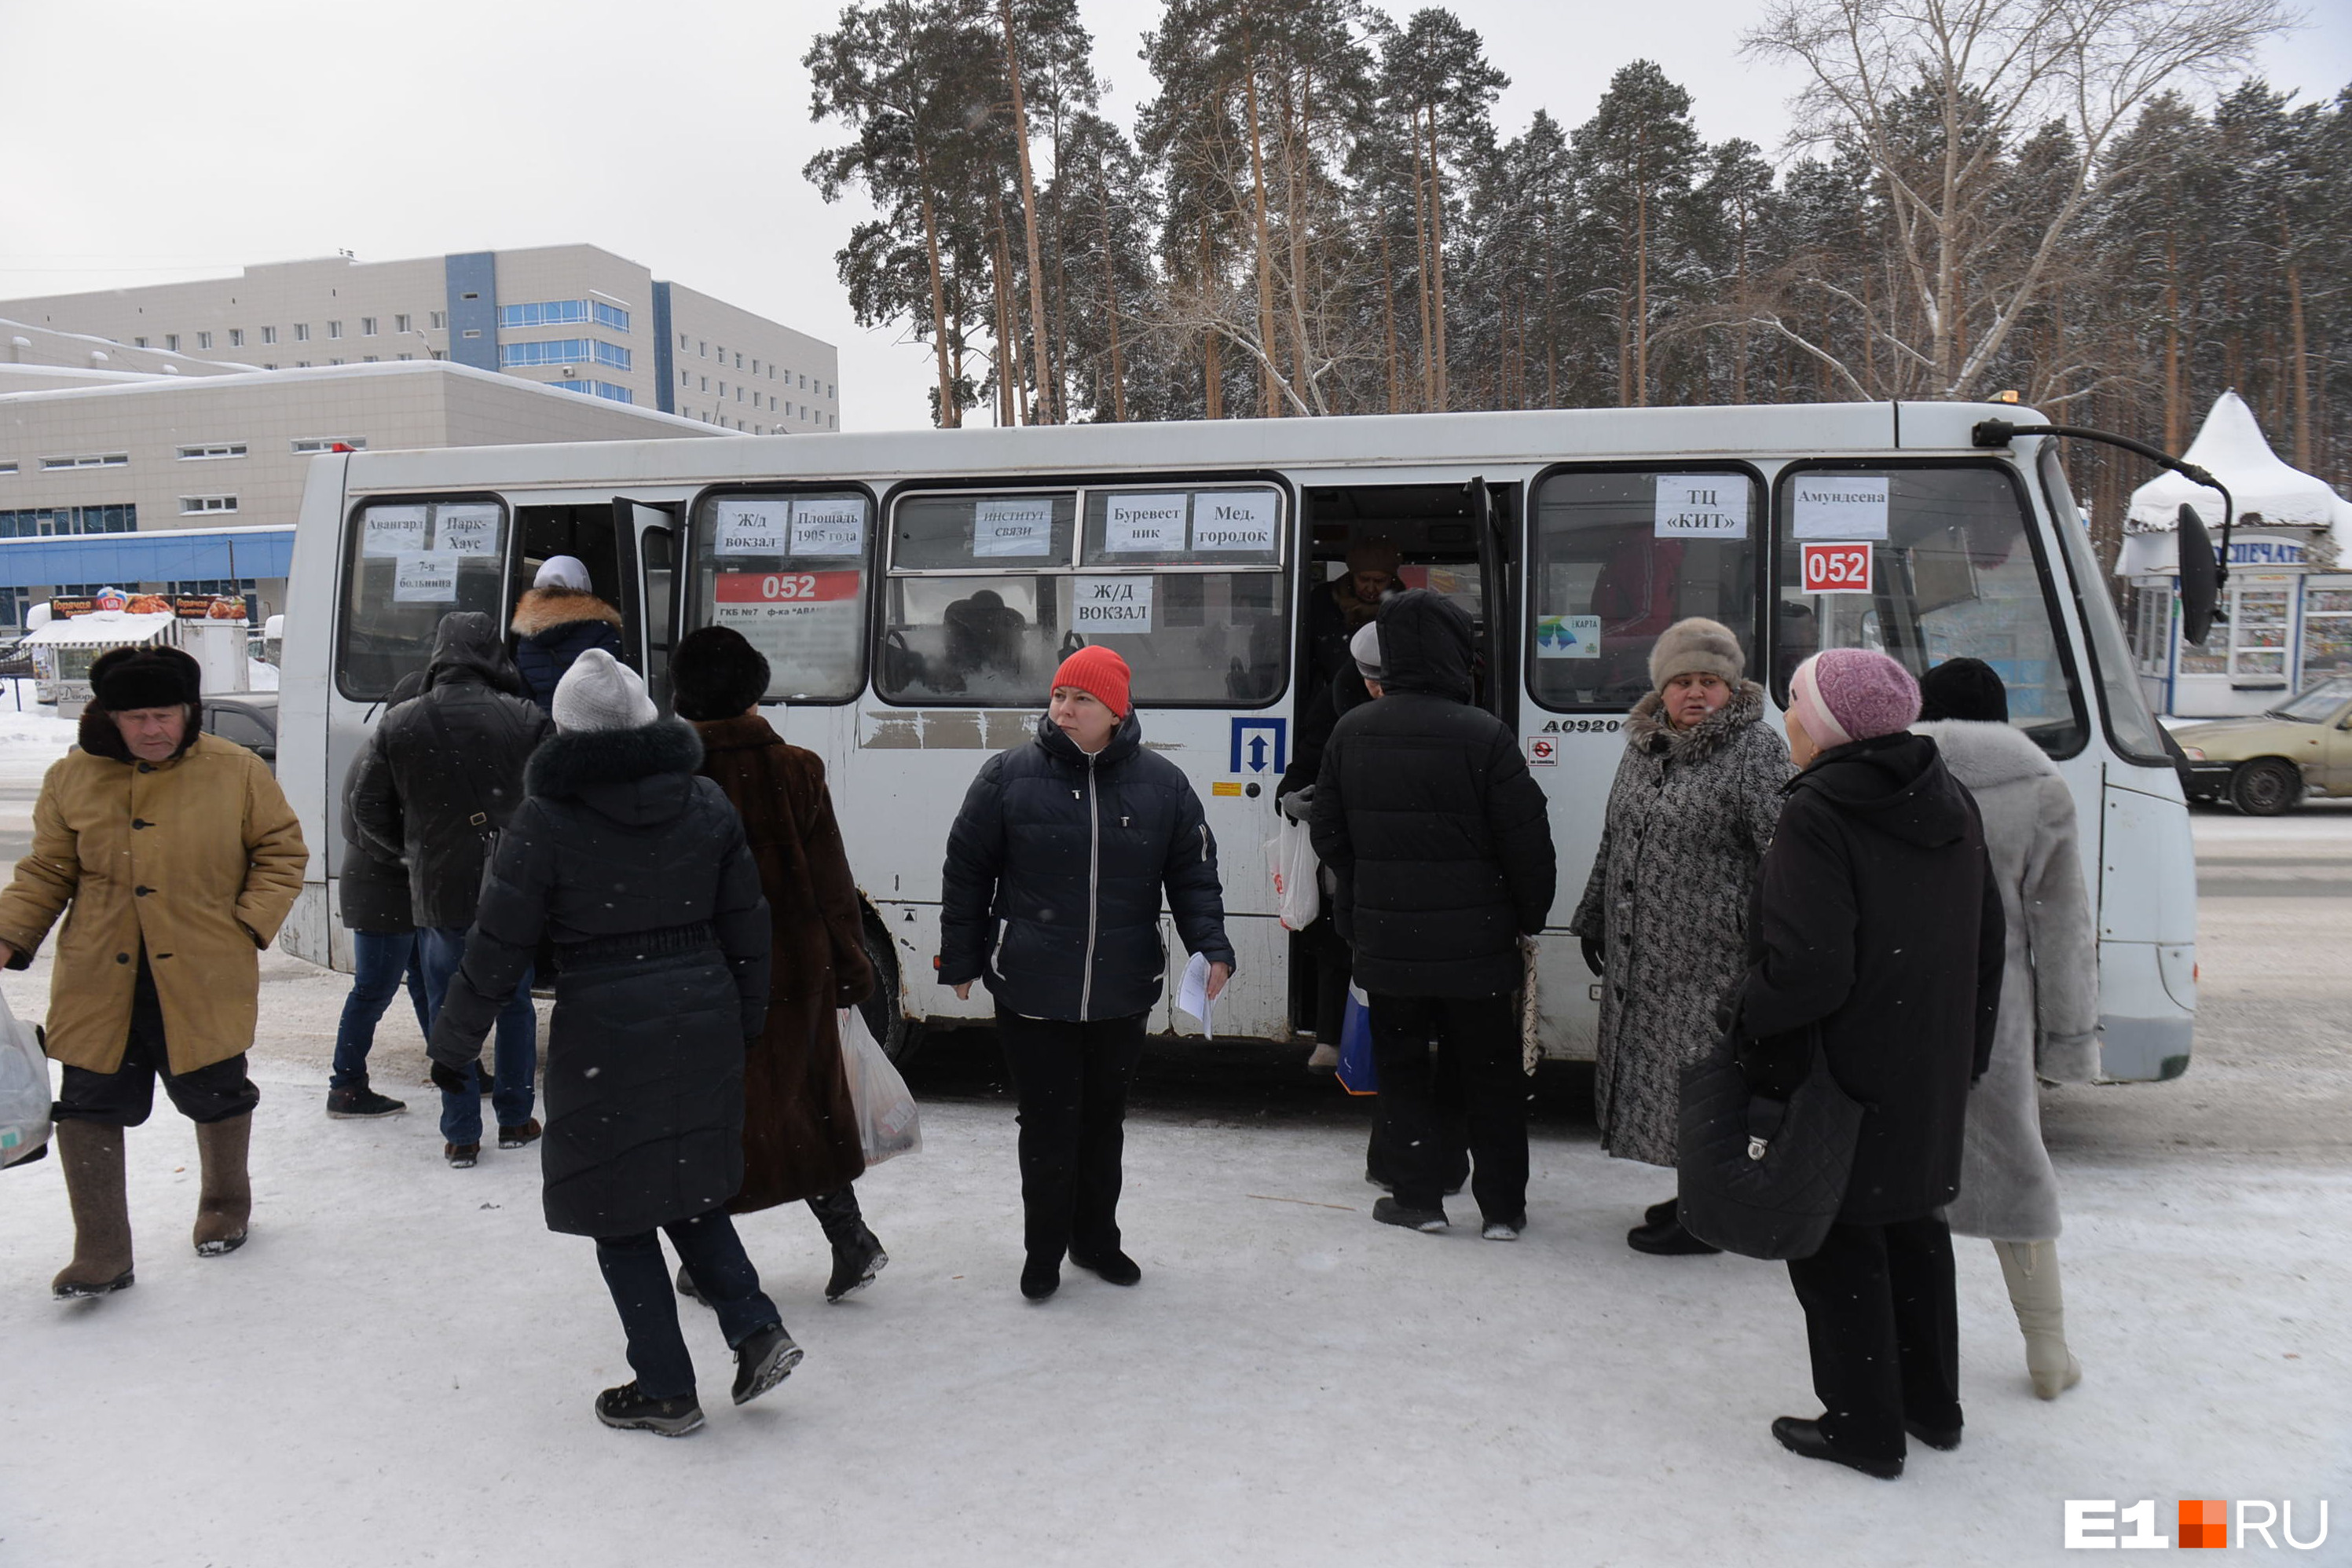 «Жалкие 33 рубля важнее здоровья человека?» Как на глазах у журналиста E1.RU пассажиру автобуса защемило руку